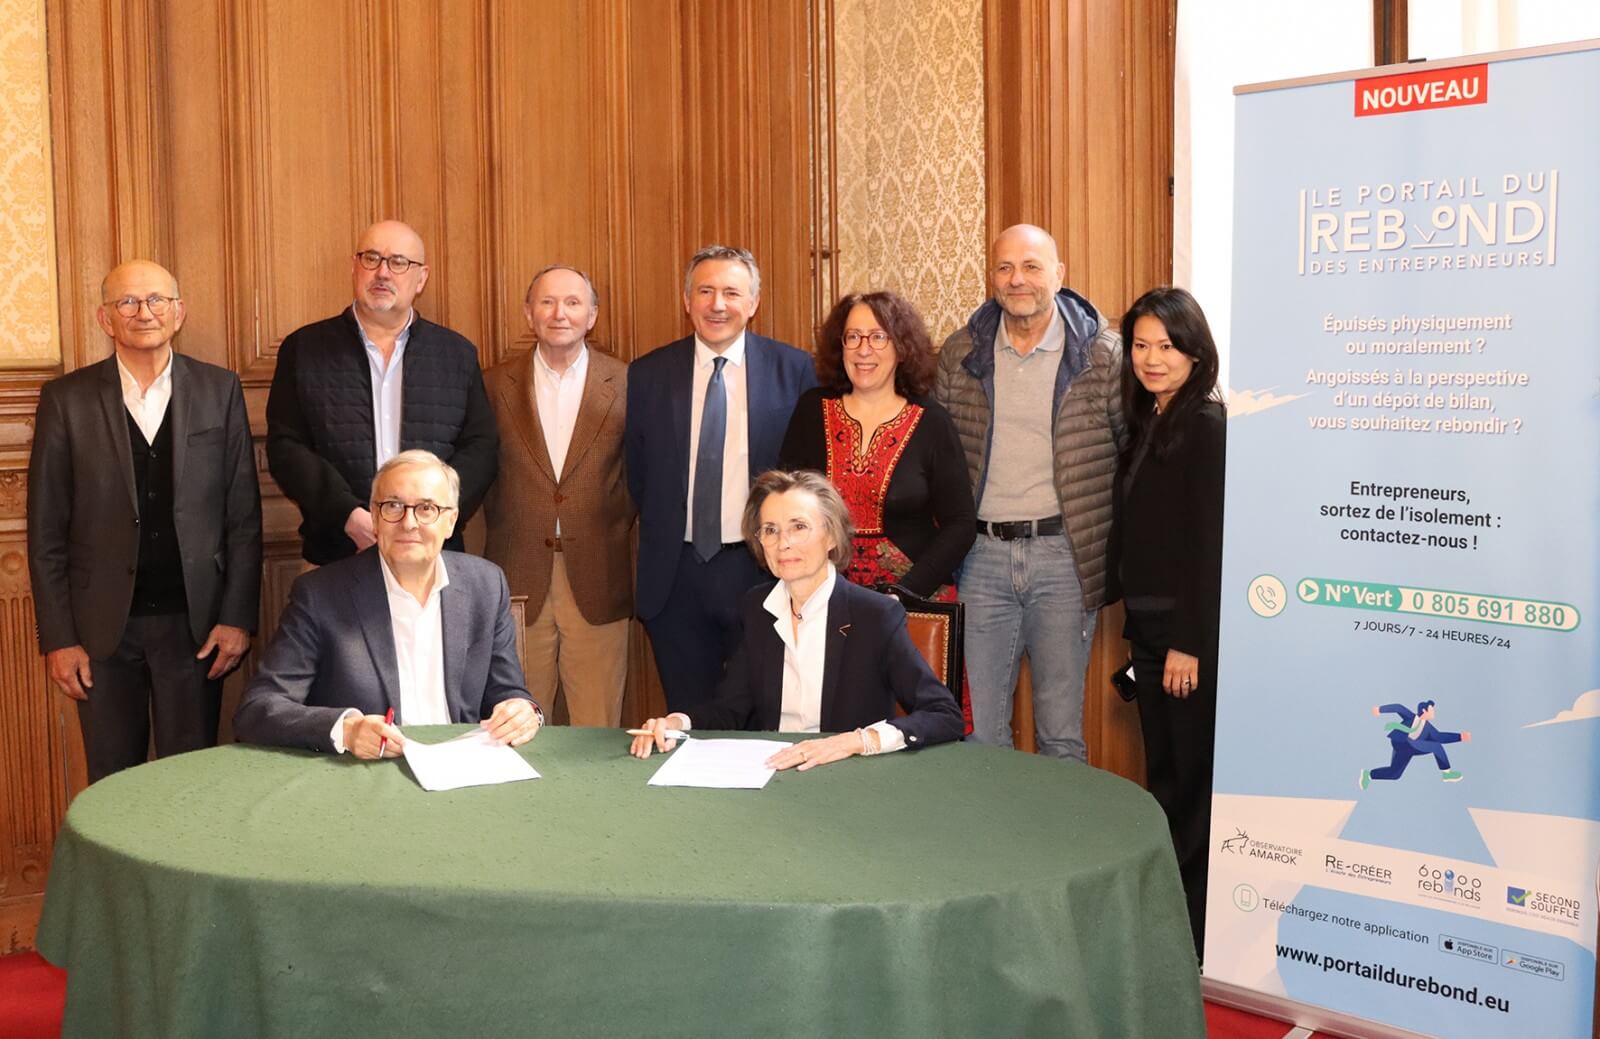 Partenariat Portail du Rebond des Entrepreneurs et Reseau Initiative France